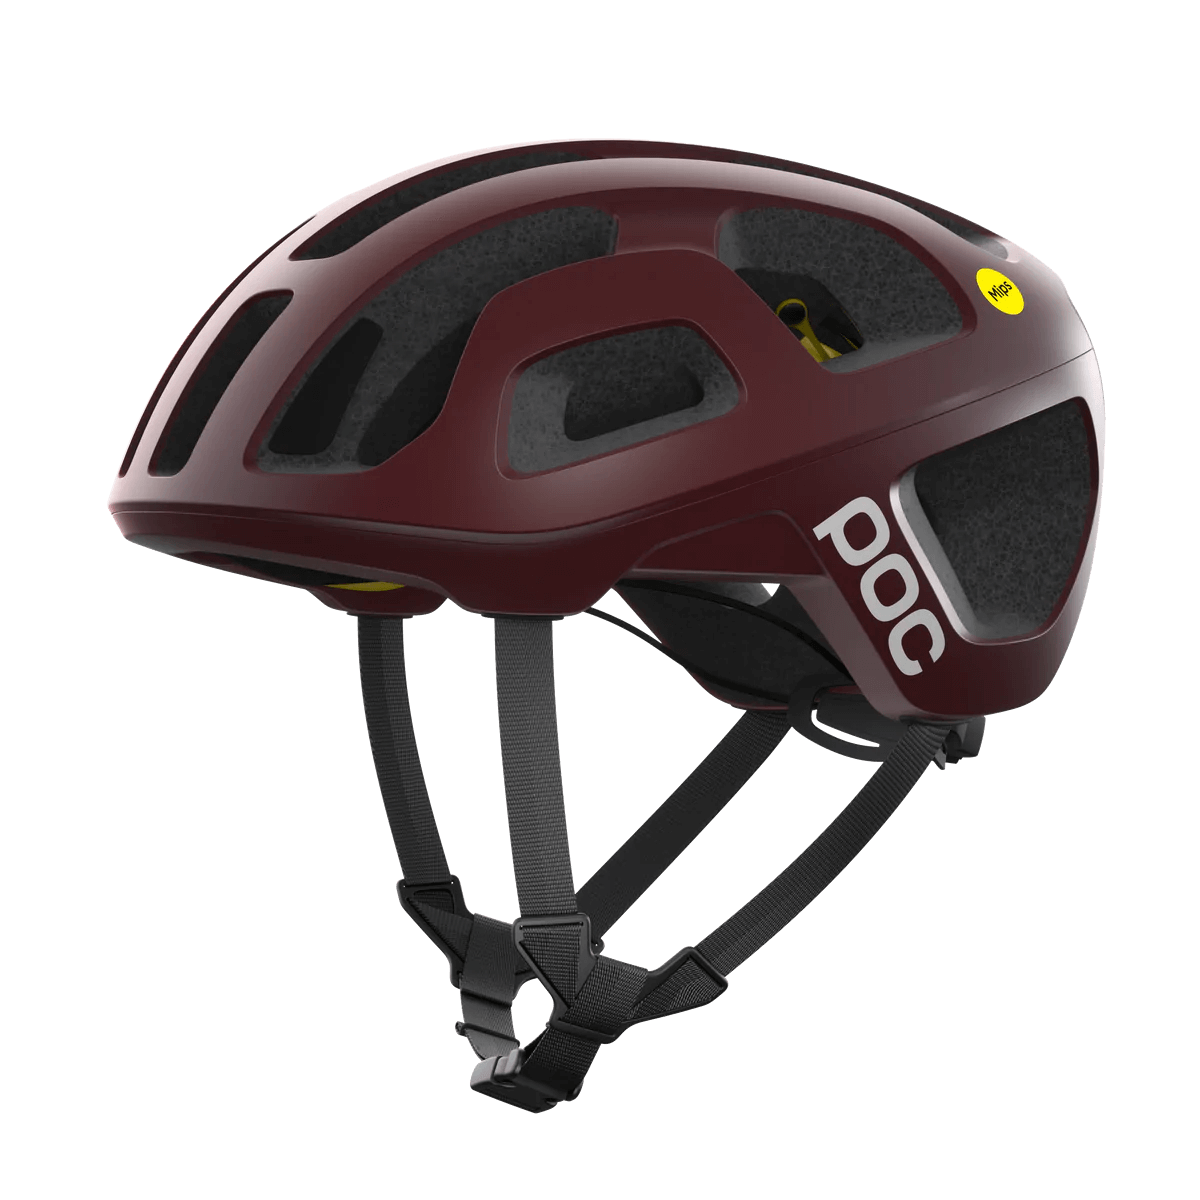 JCF公認ロードバイク用ヘルメット 10801-1136 オクタルミップス Octal Mips - Garnet Red Matt [ユニセックス]